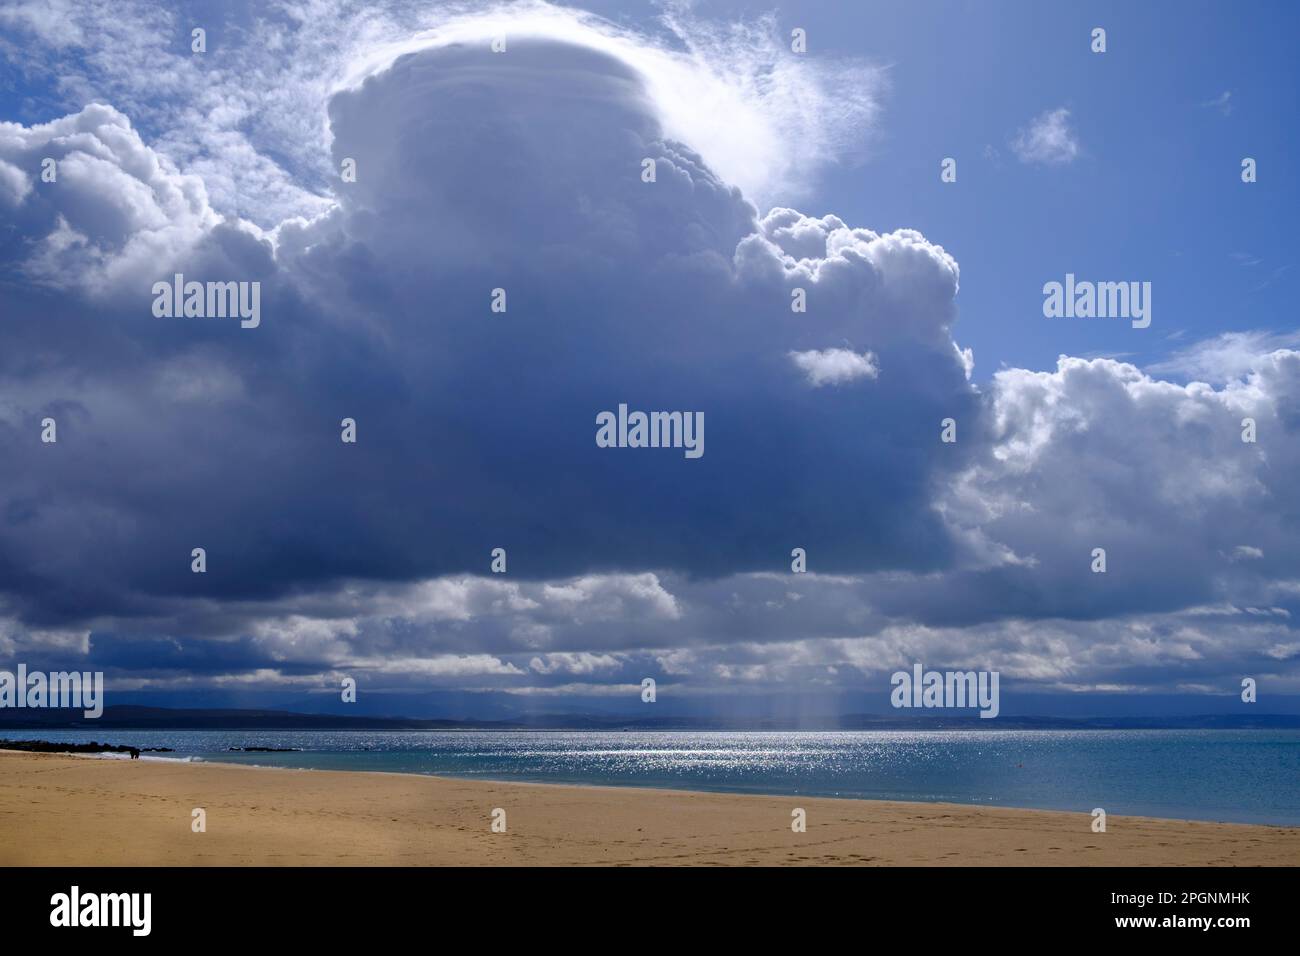 Afrique du Sud, Western Cape, Mossel Bay, grands nuages épais au-dessus de Santos Beach Banque D'Images